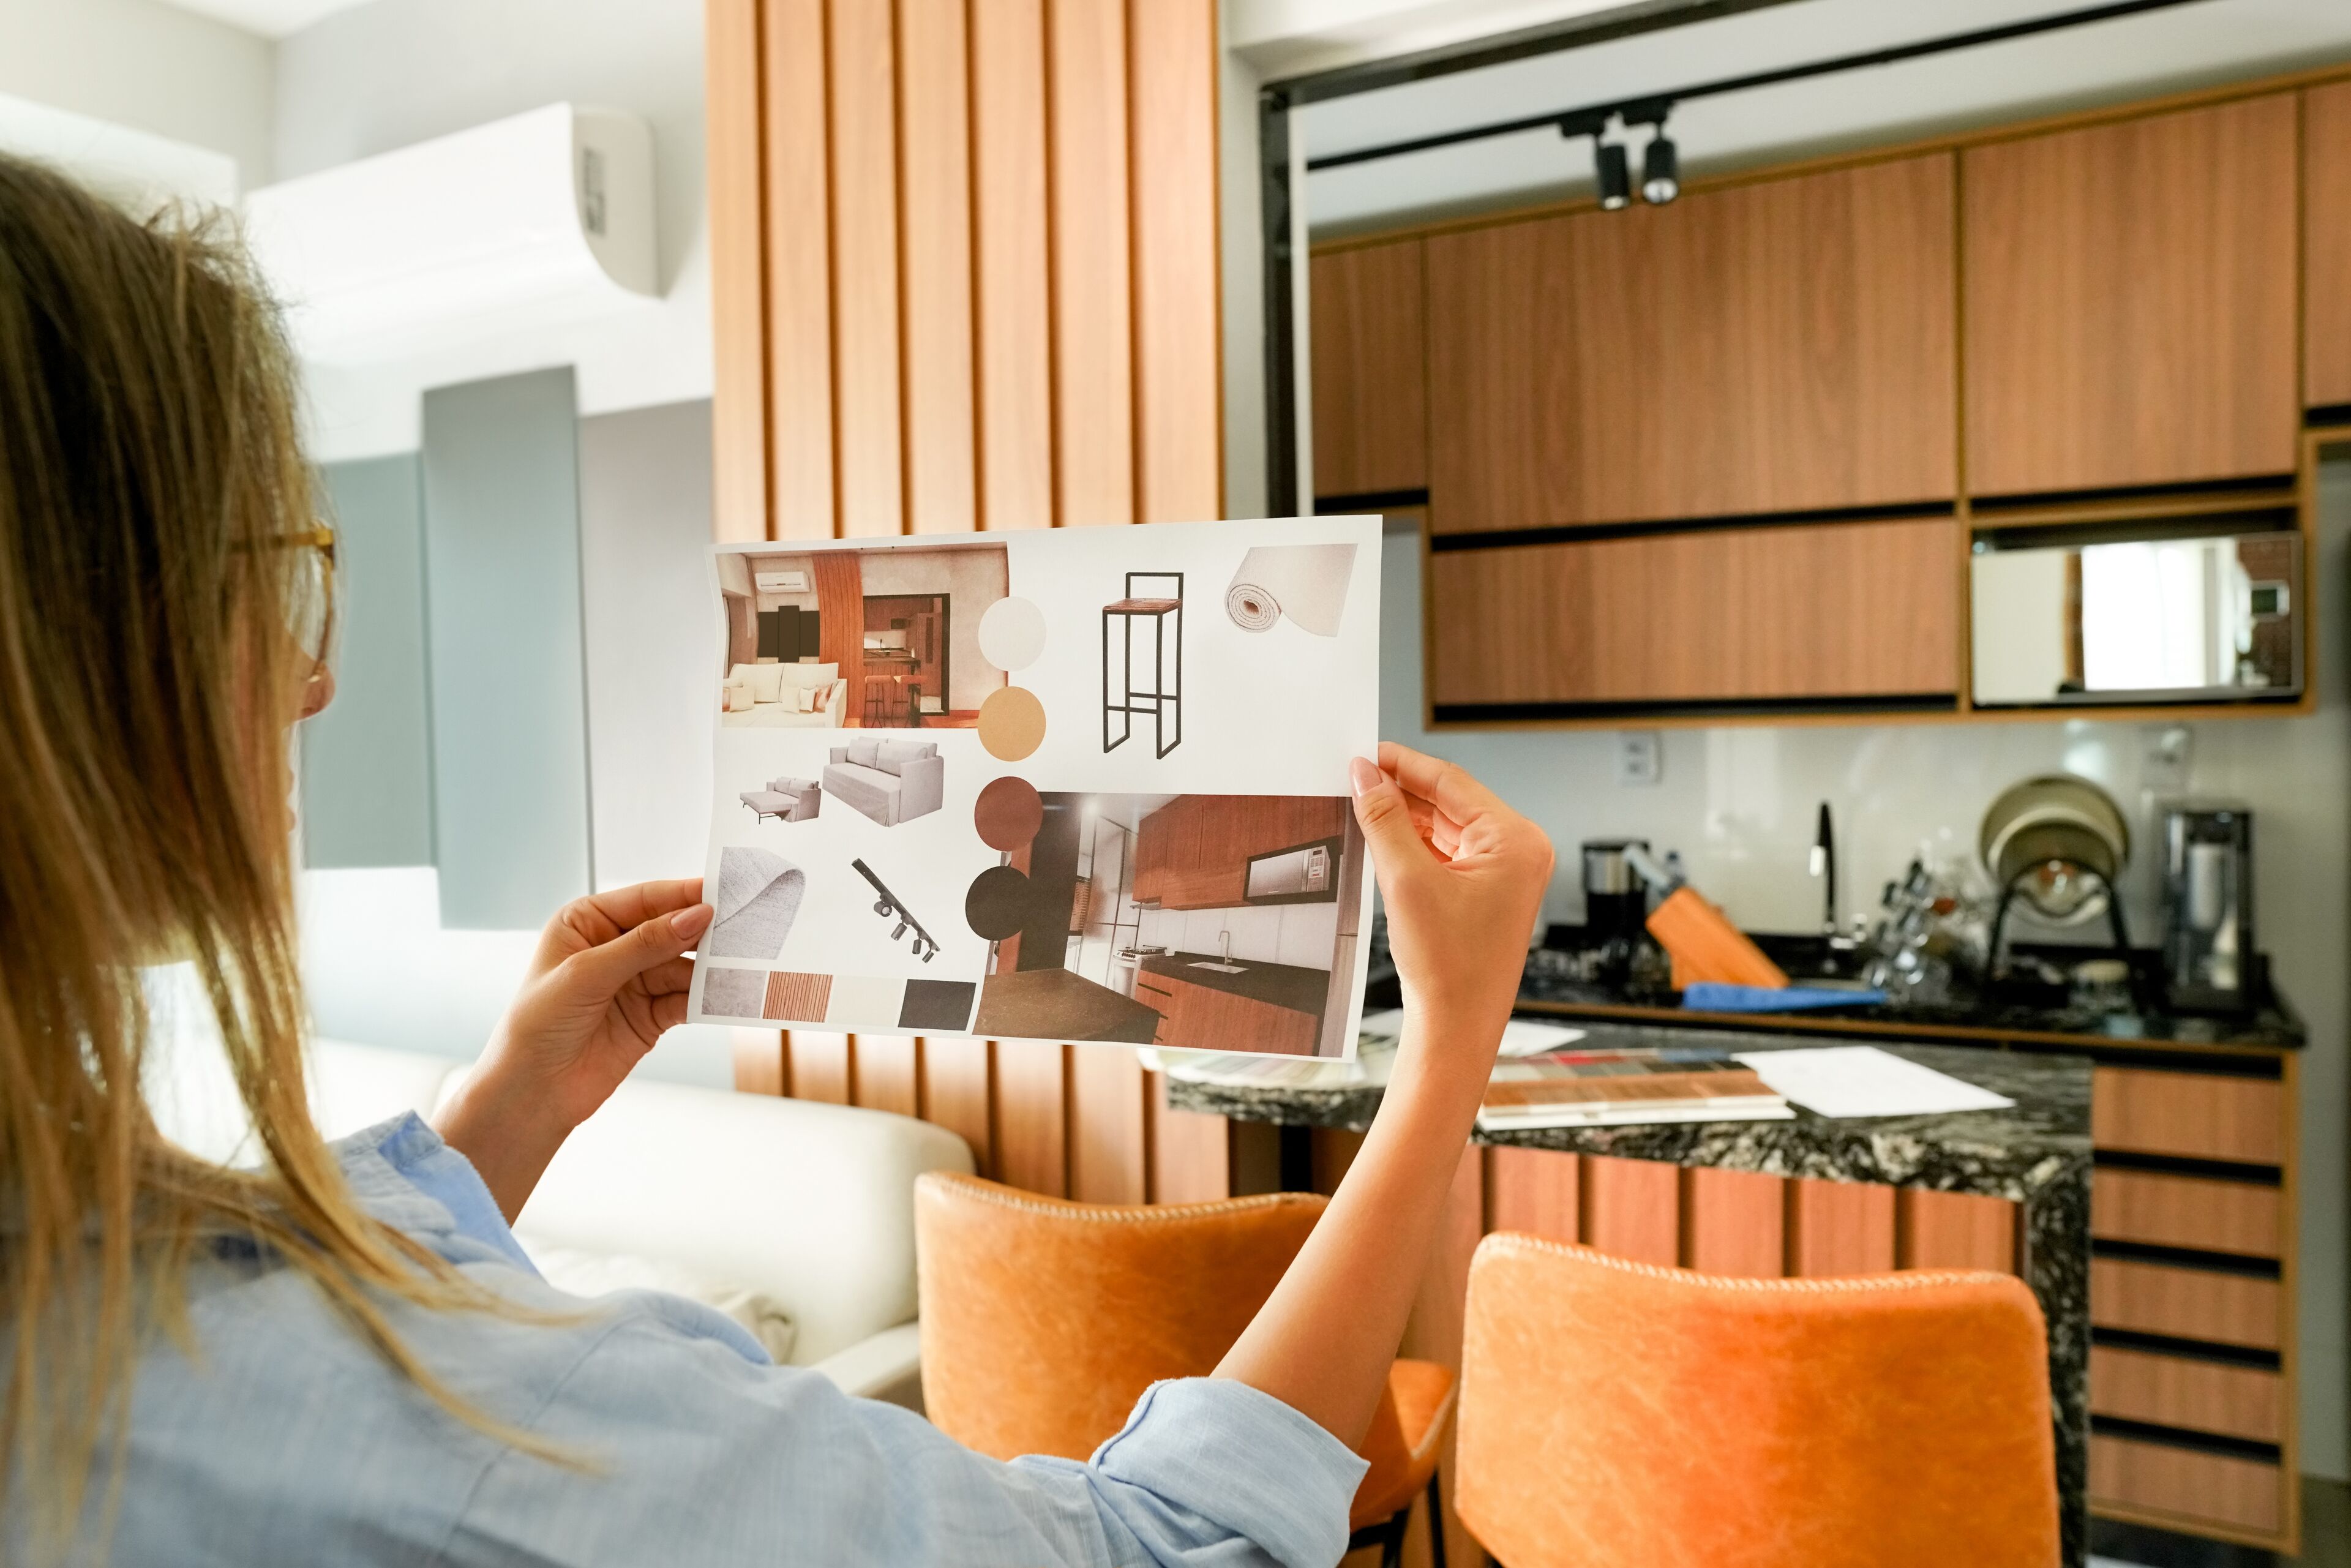 ImageUne personne examine un panneau d'ambiance comprenant divers éléments de design intérieur pour un projet de rénovation domiciliaire.